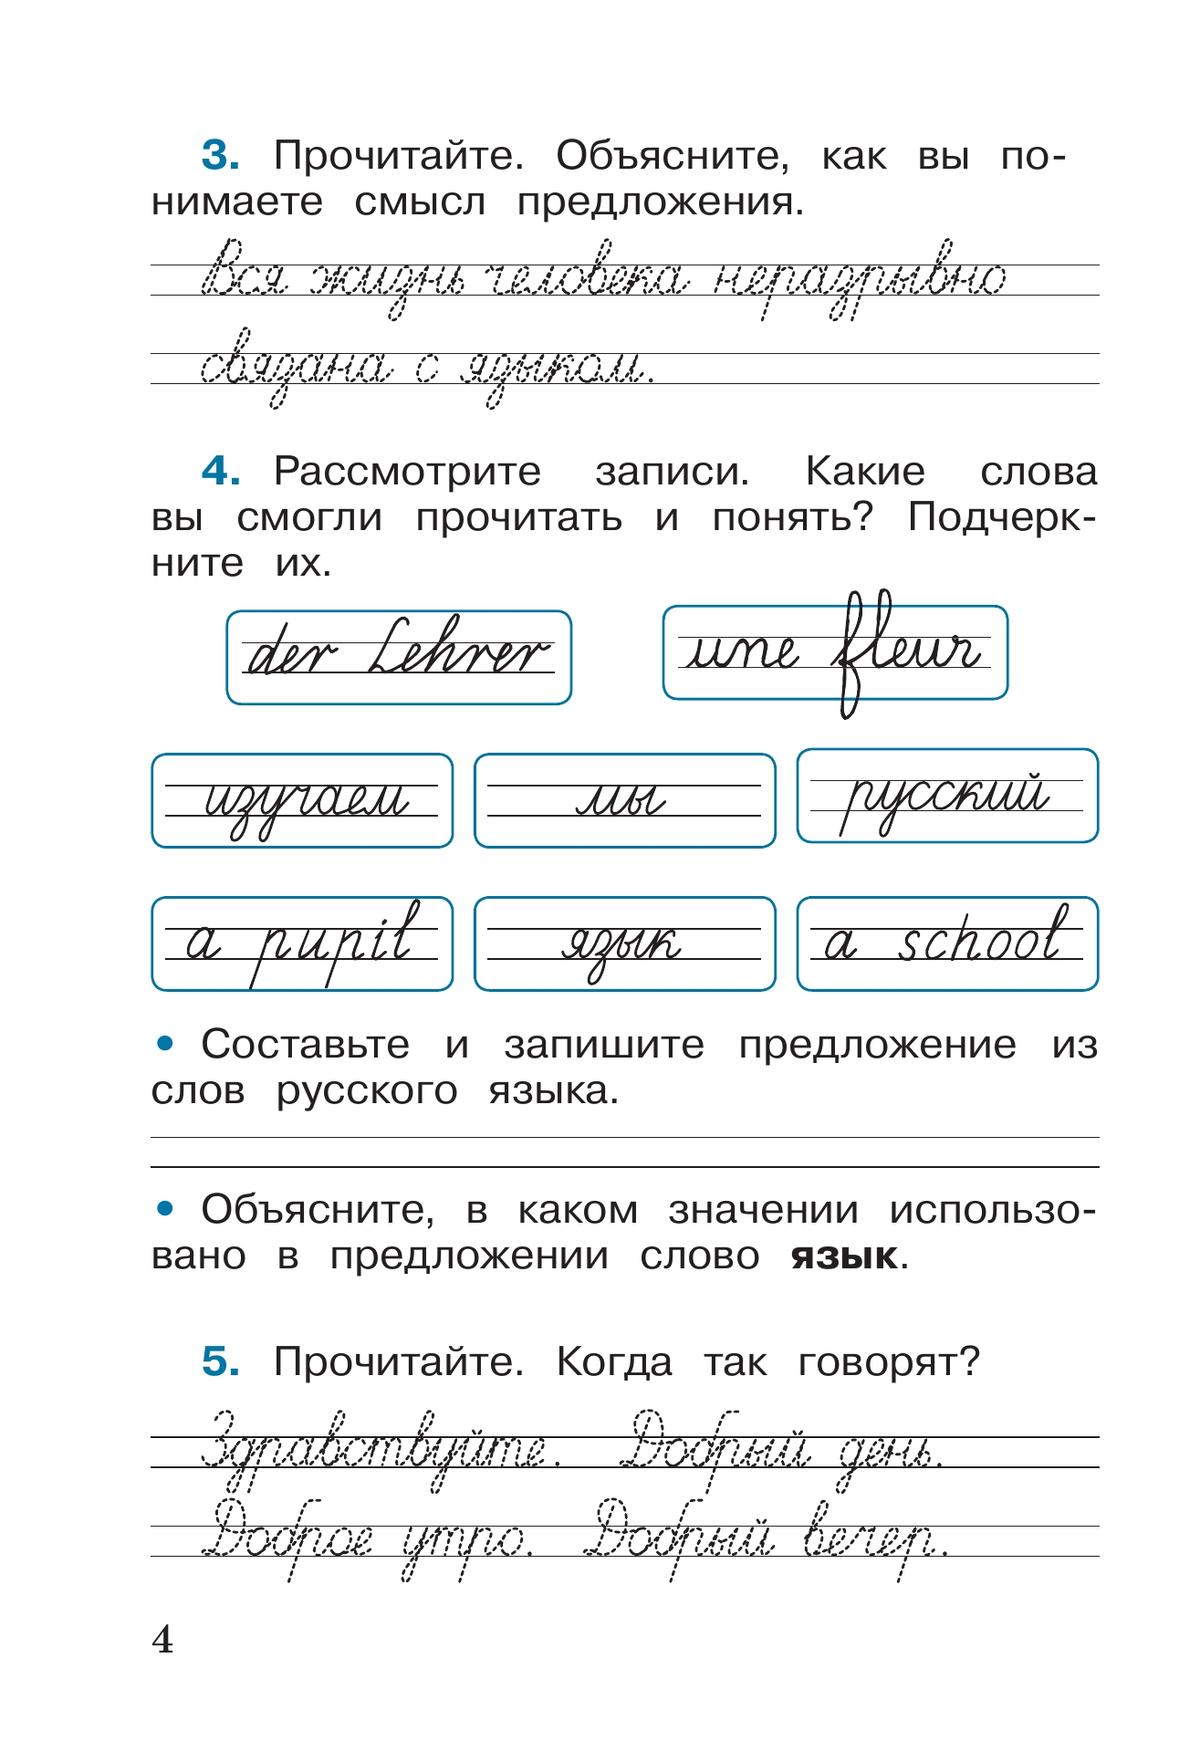 Русский язык. Рабочая тетрадь. 2 класс. В 2-х ч. Ч. 1 3